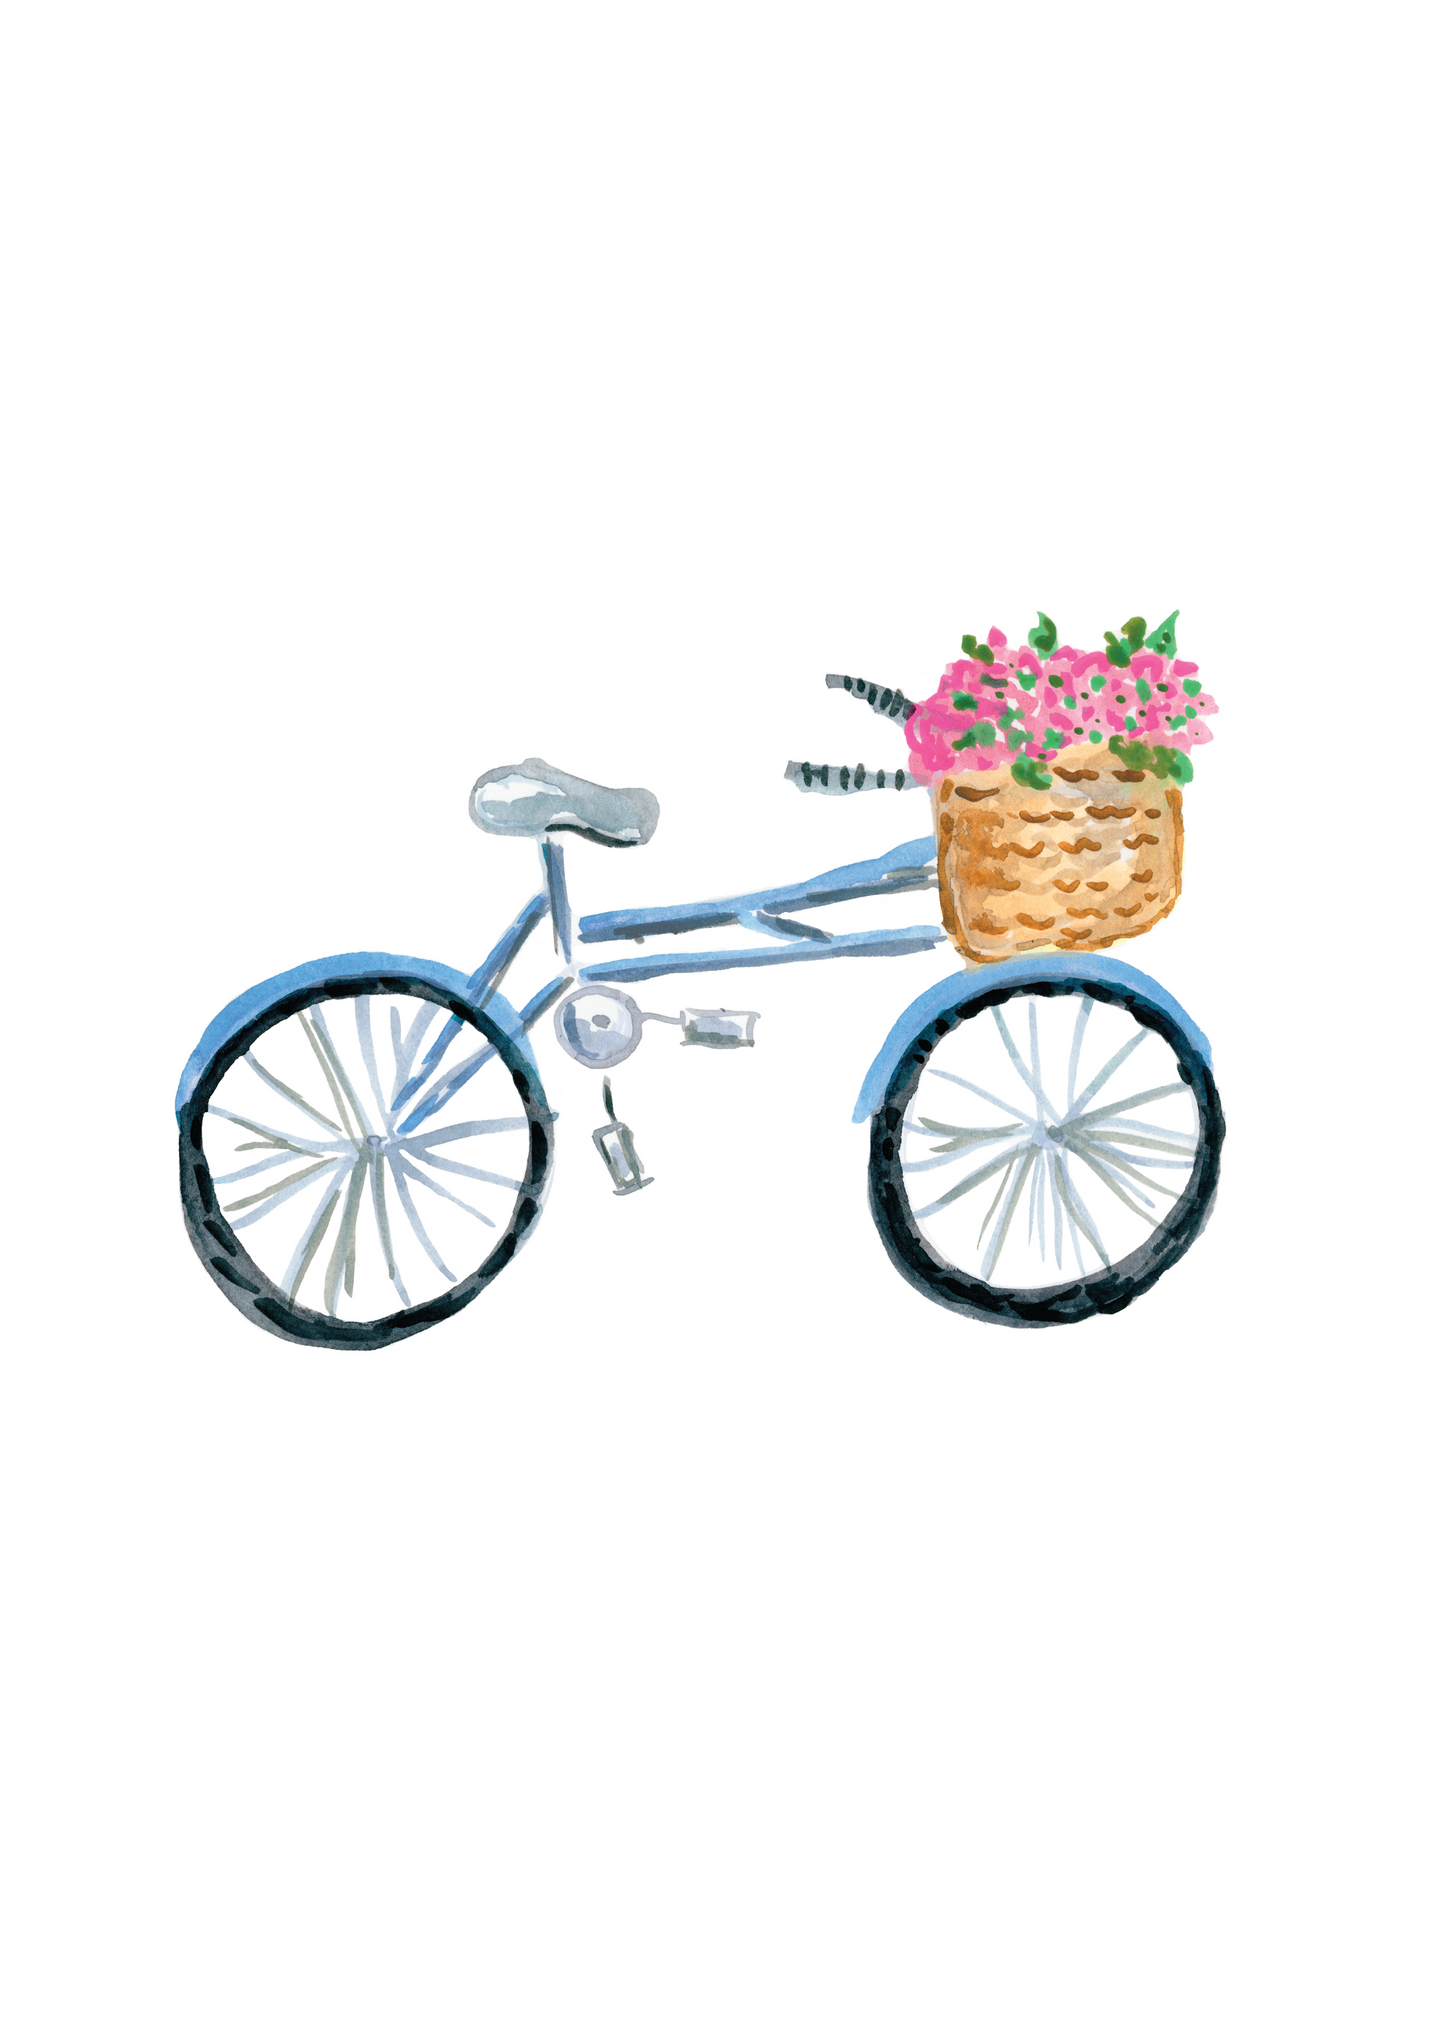 Bicycle Flower Basket